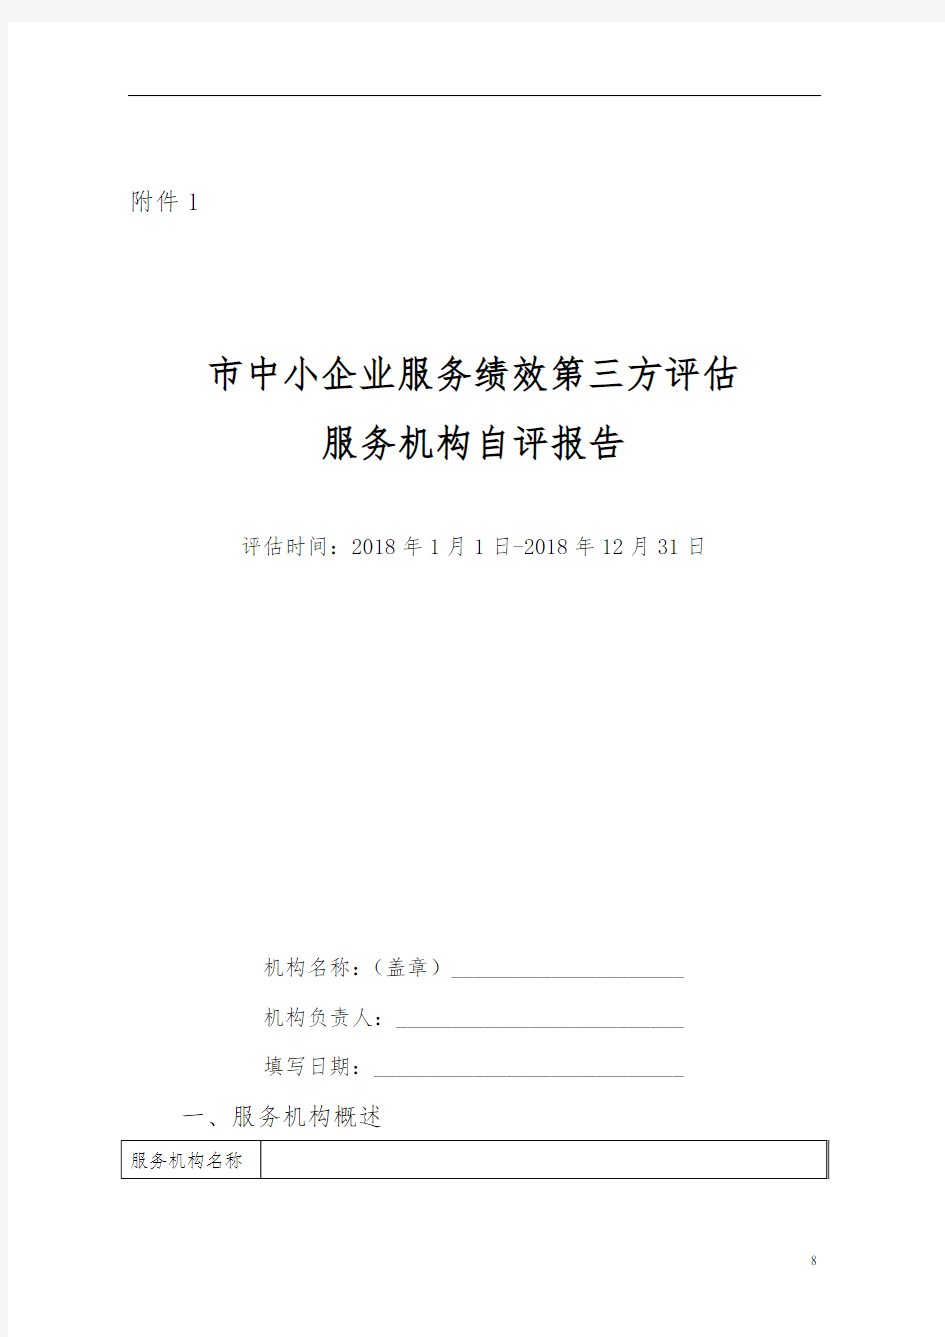 上海市中小企业服务绩效第三方评估自评报告书